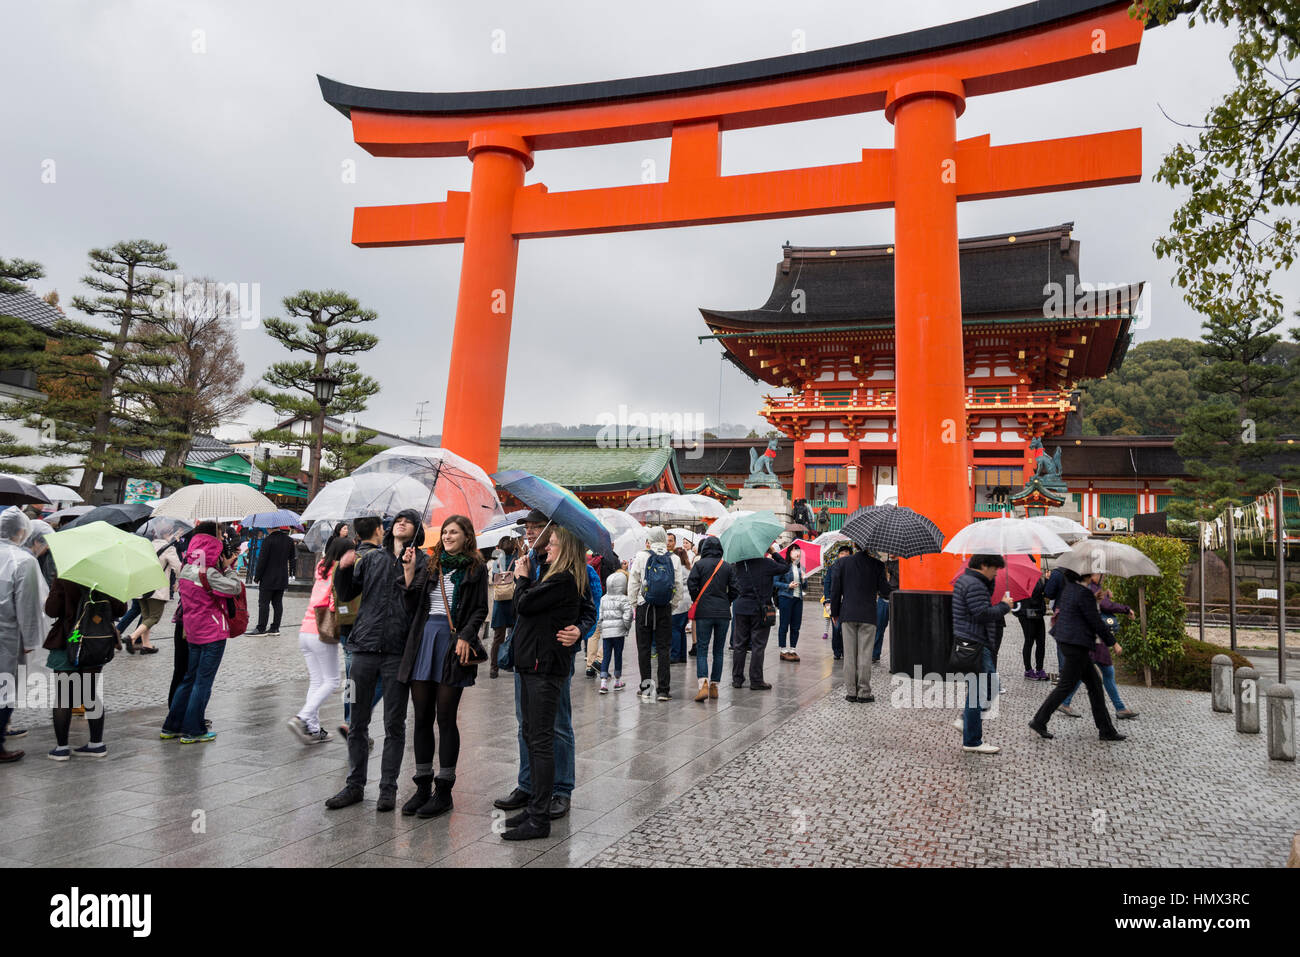 Tourists with umbrellas on a rainy day at Fushimi Inari Taisha (Shinto shrine), Kyoto, Japan Stock Photo